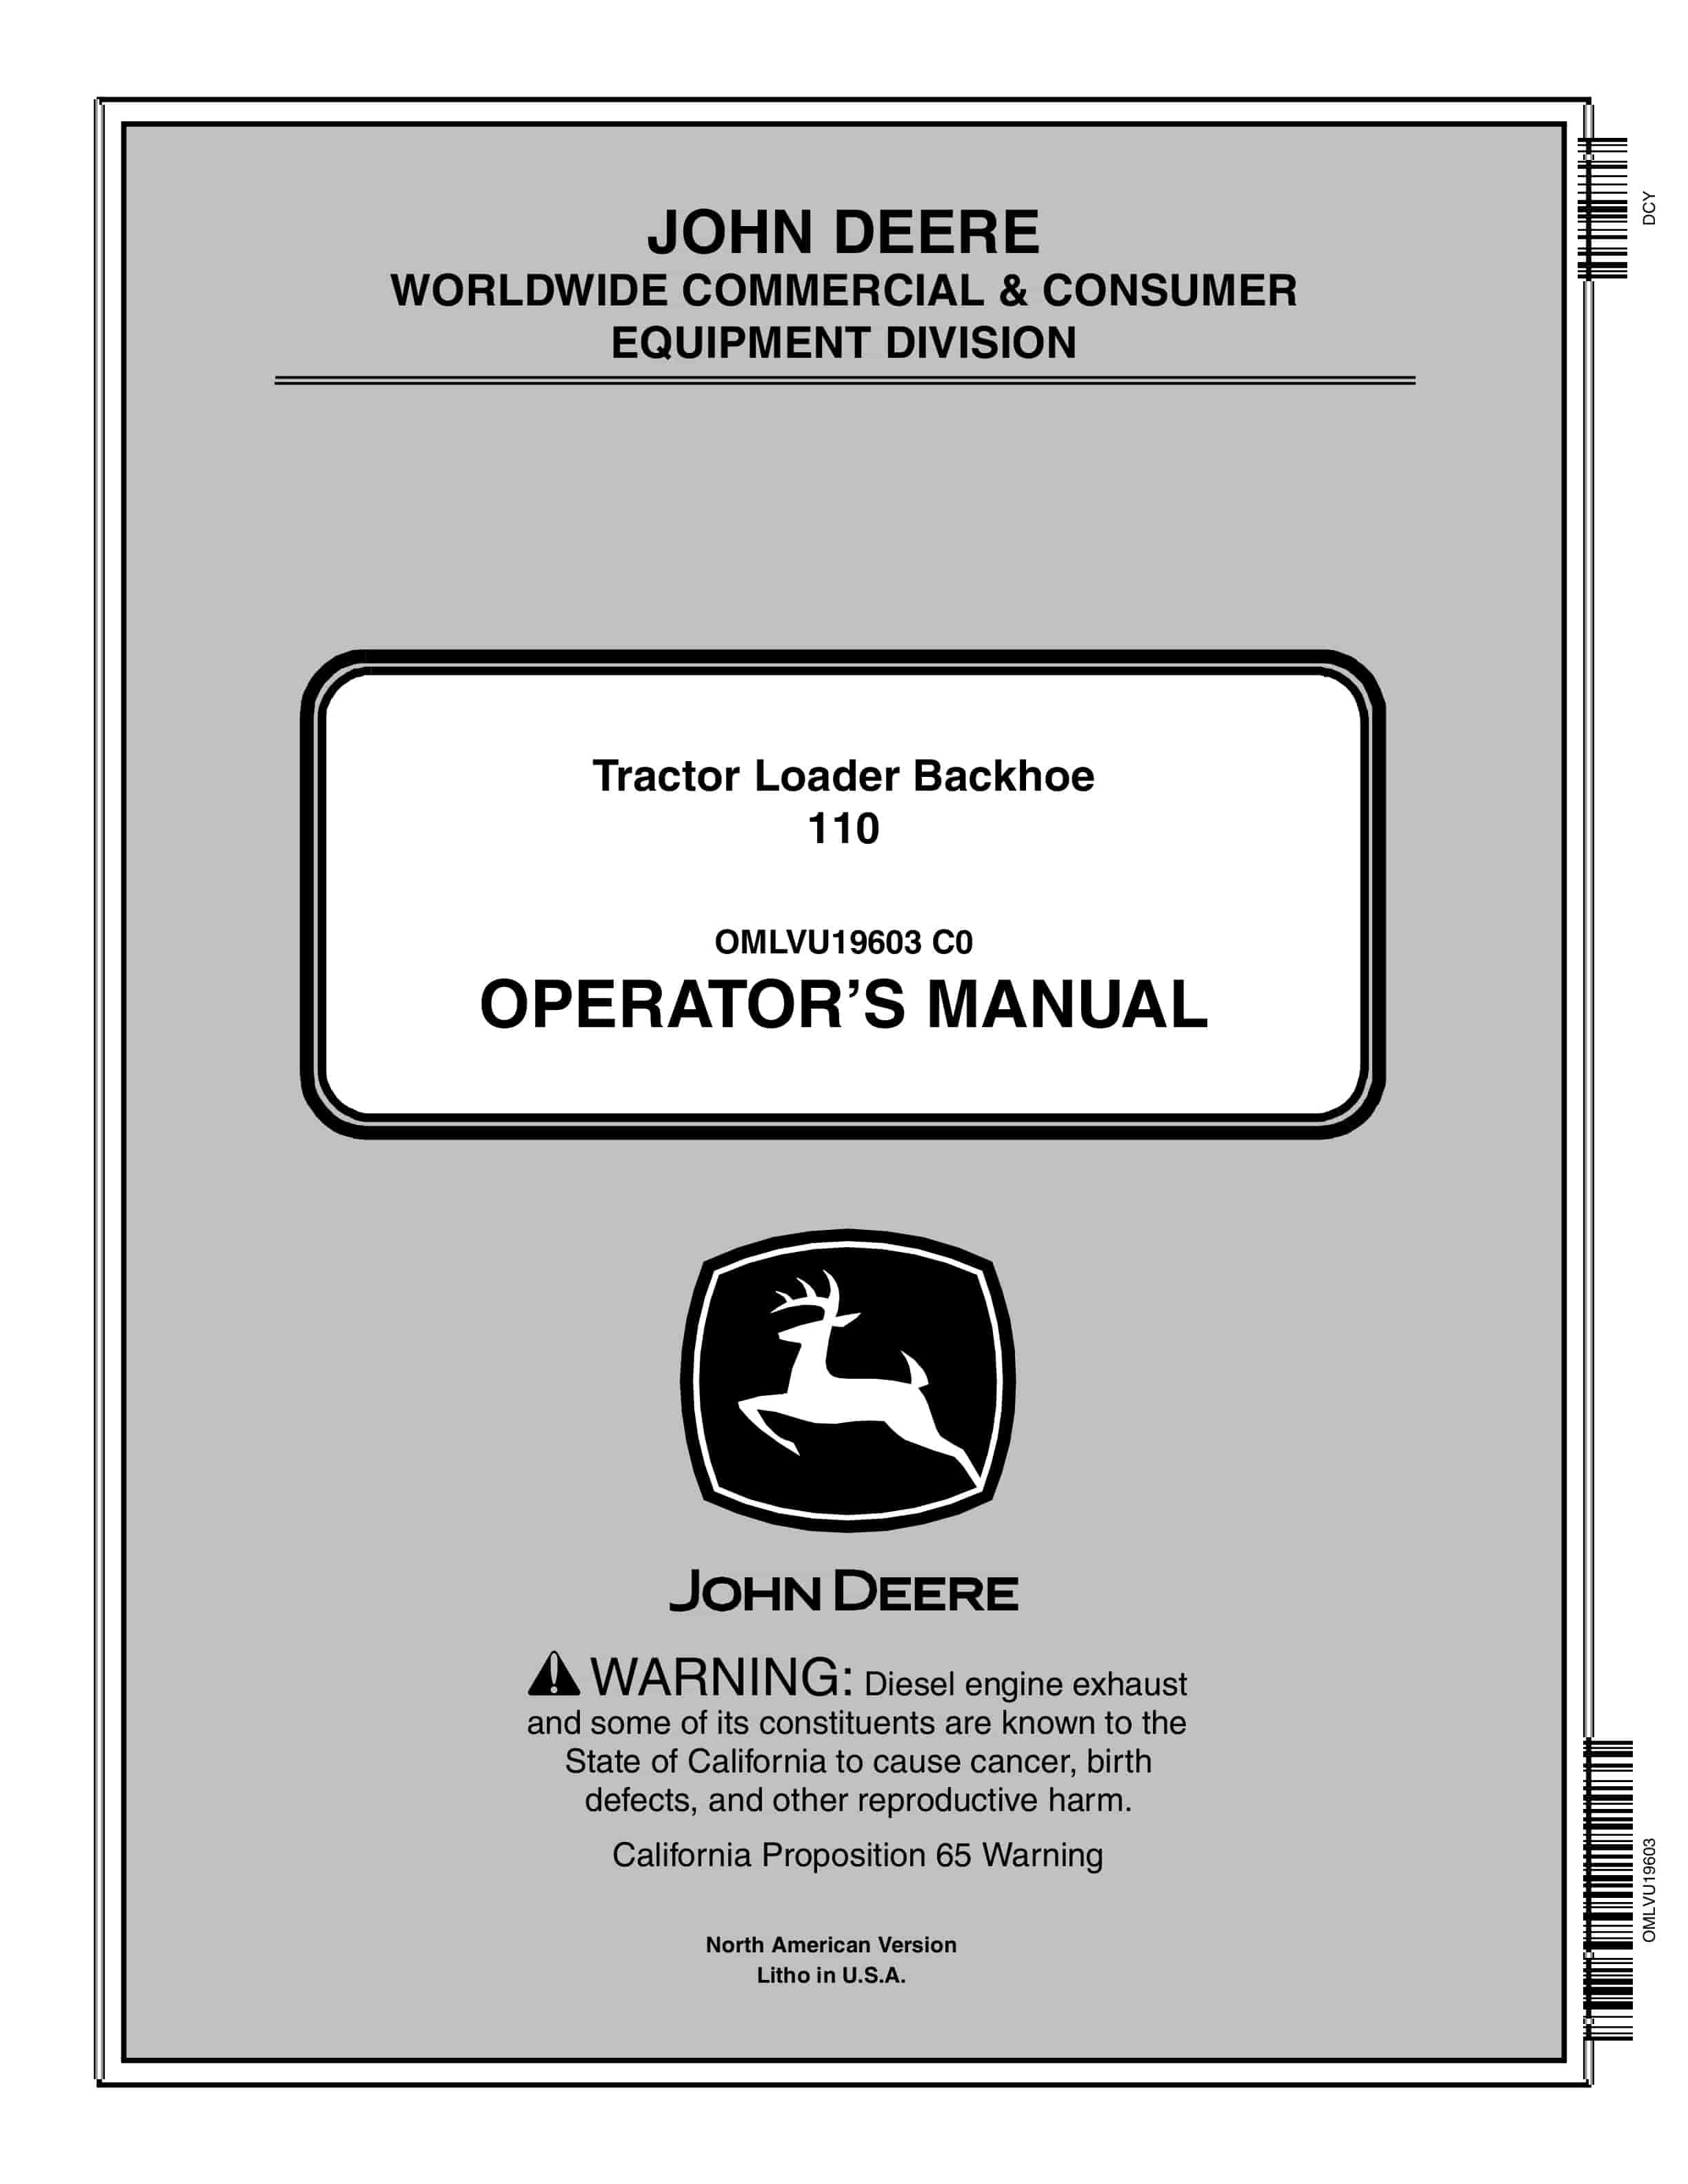 John Deere 110 Tractor Loader Backhoe Operator Manual OMLVU19603-1